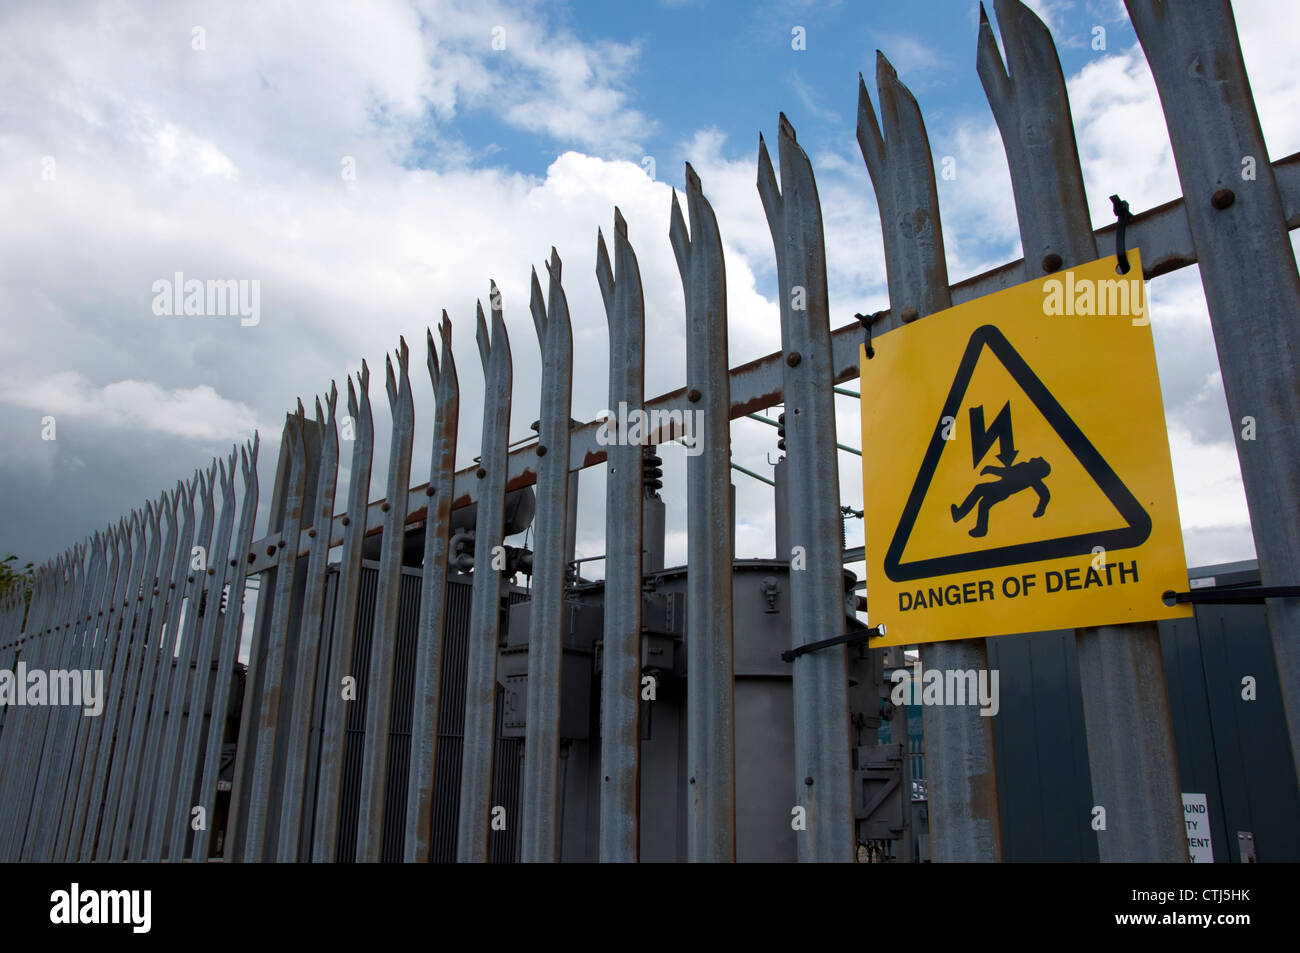 Electrical substation “danger of death” sign danger Stock Photo